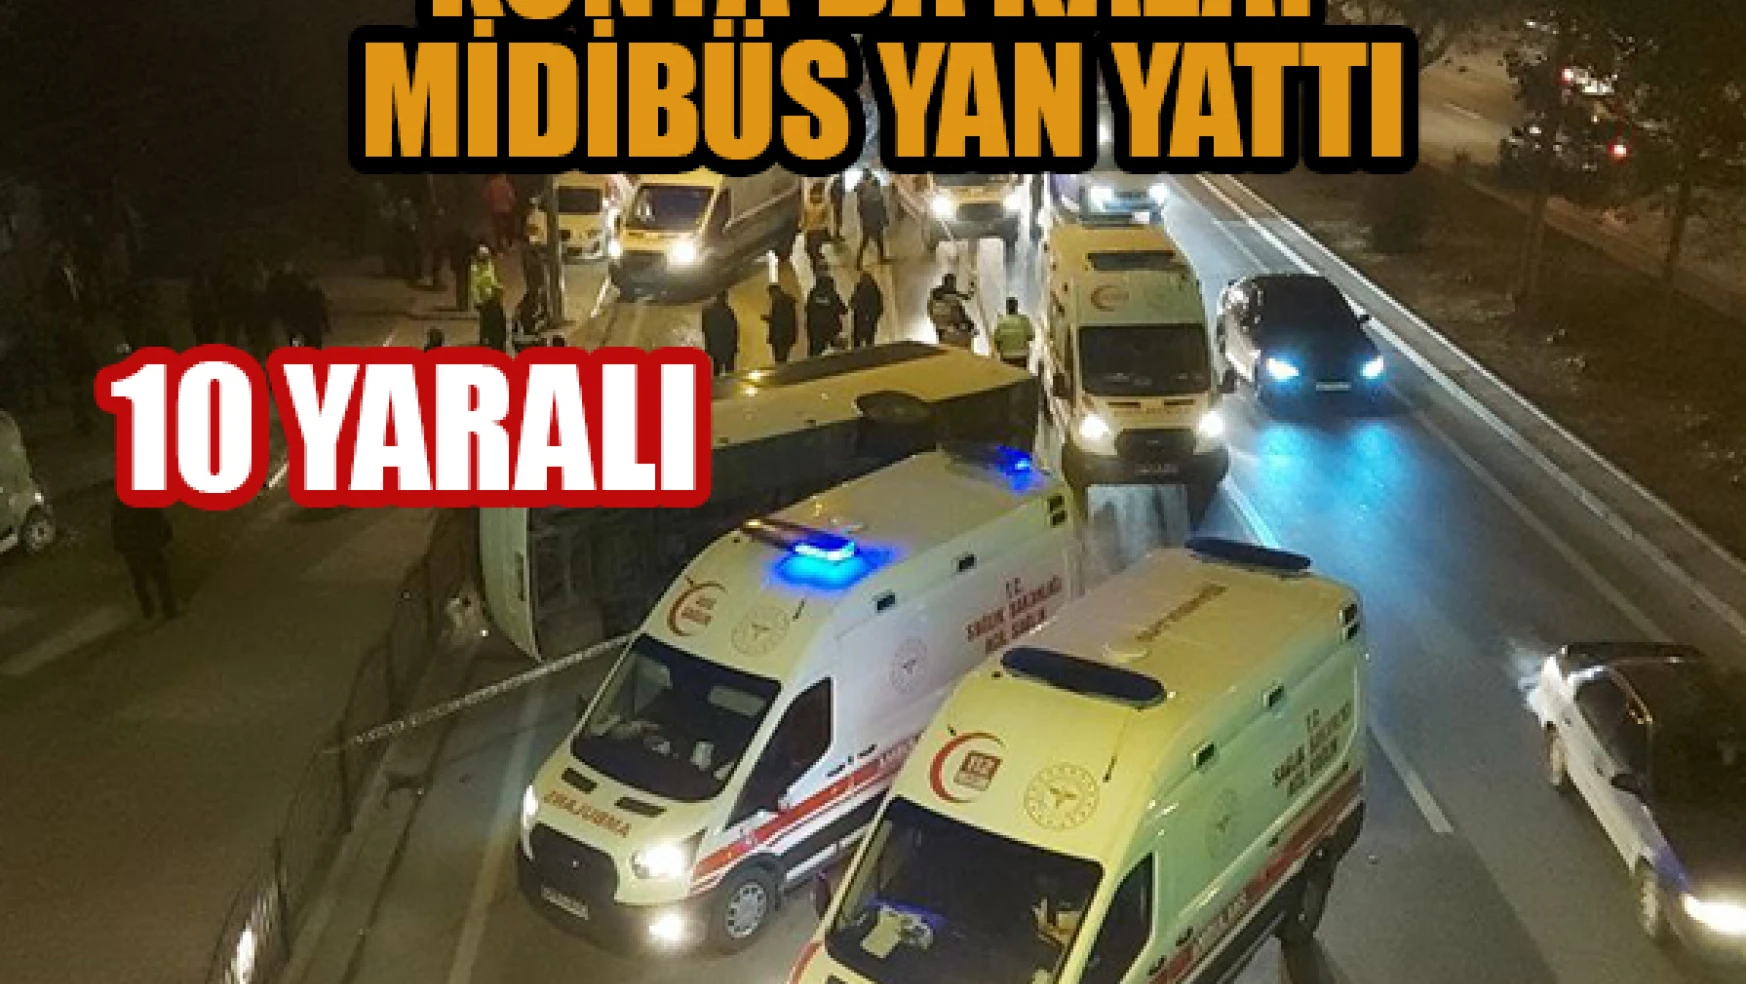 Konya'da otomobilin çarptığı midibüs yan yattı: 10 yaralı